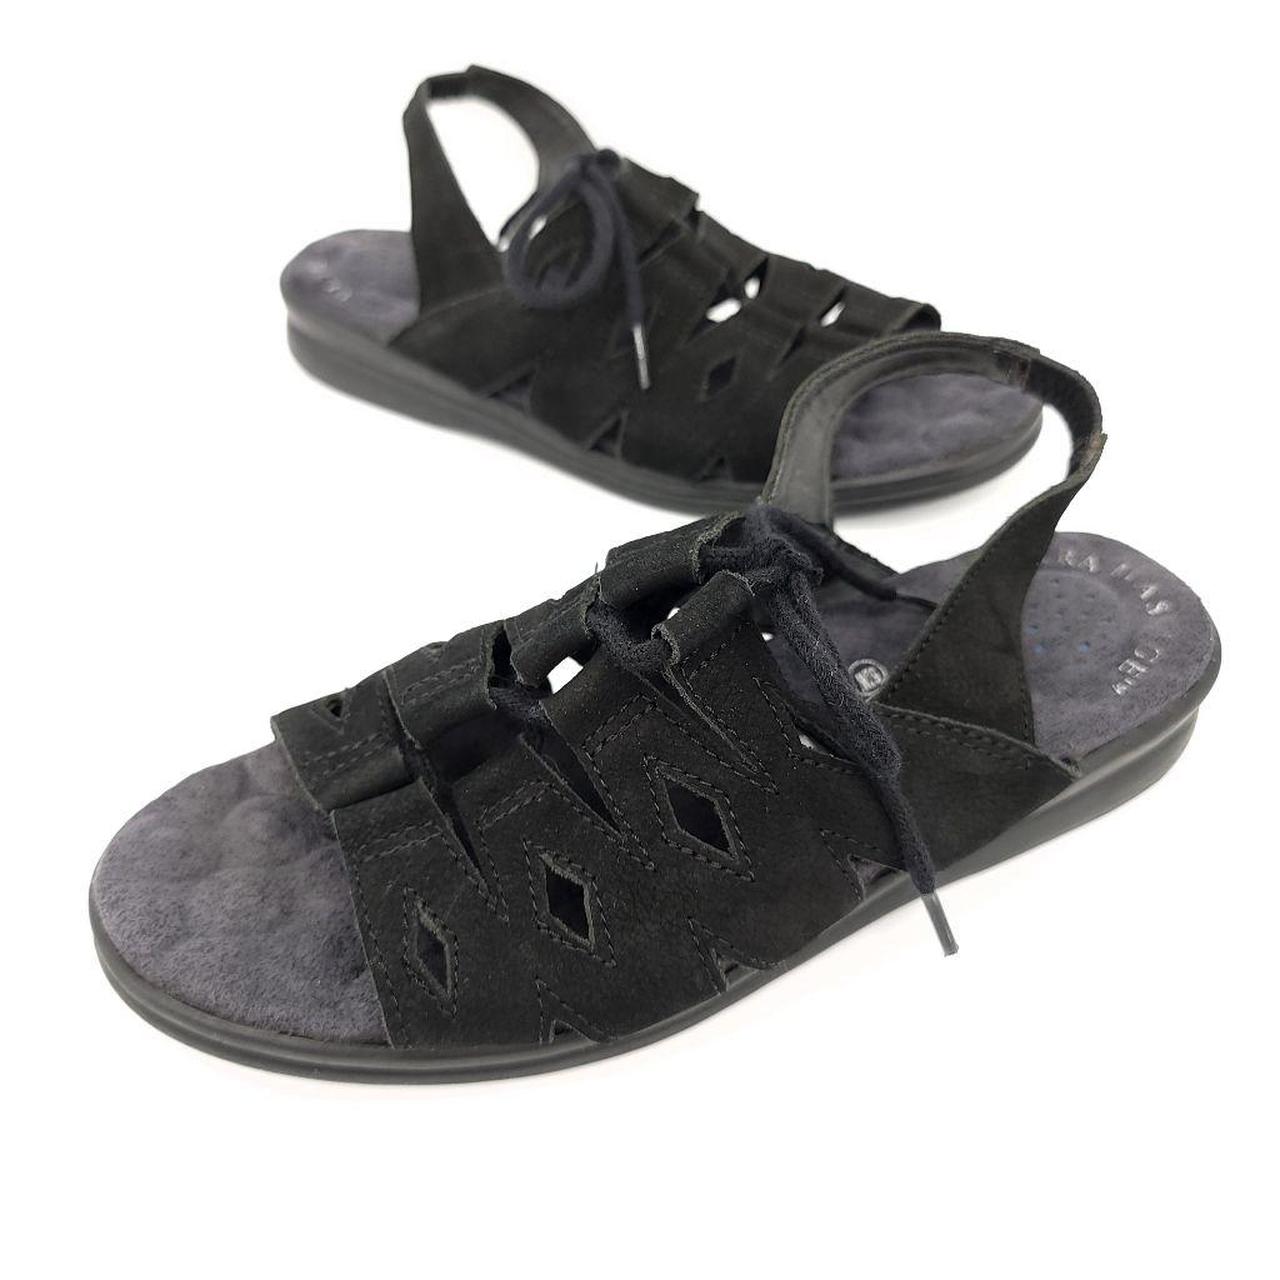 Cobbie Cuddlers Sandals Black Sandal Slip On Sling... - Depop